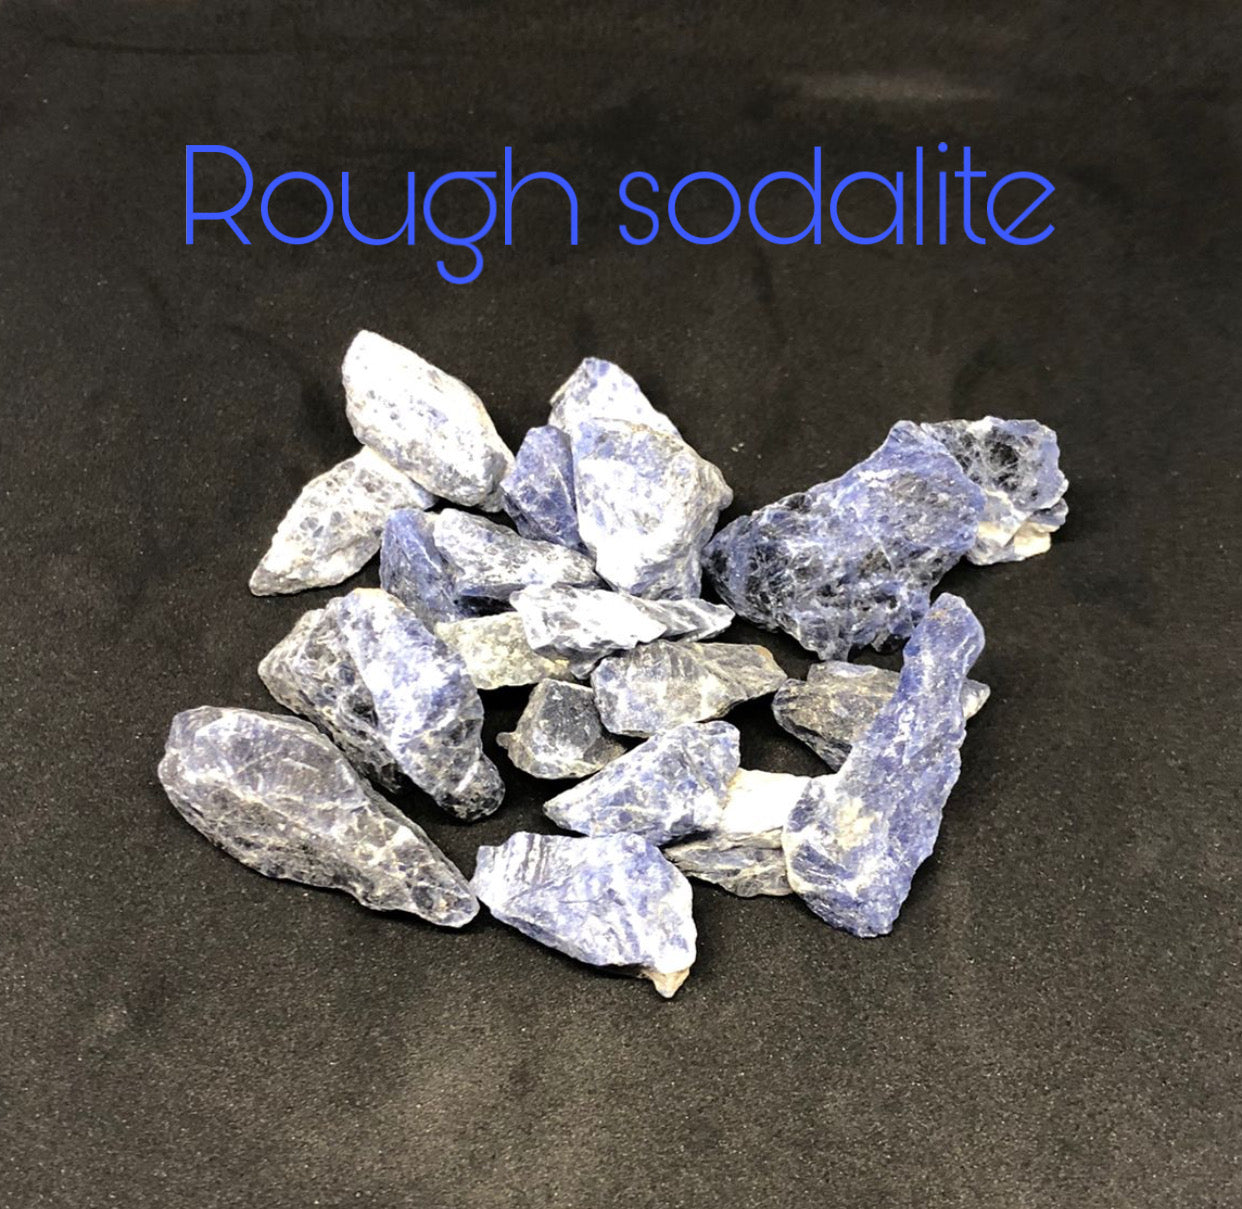 Small Rough Sodalite